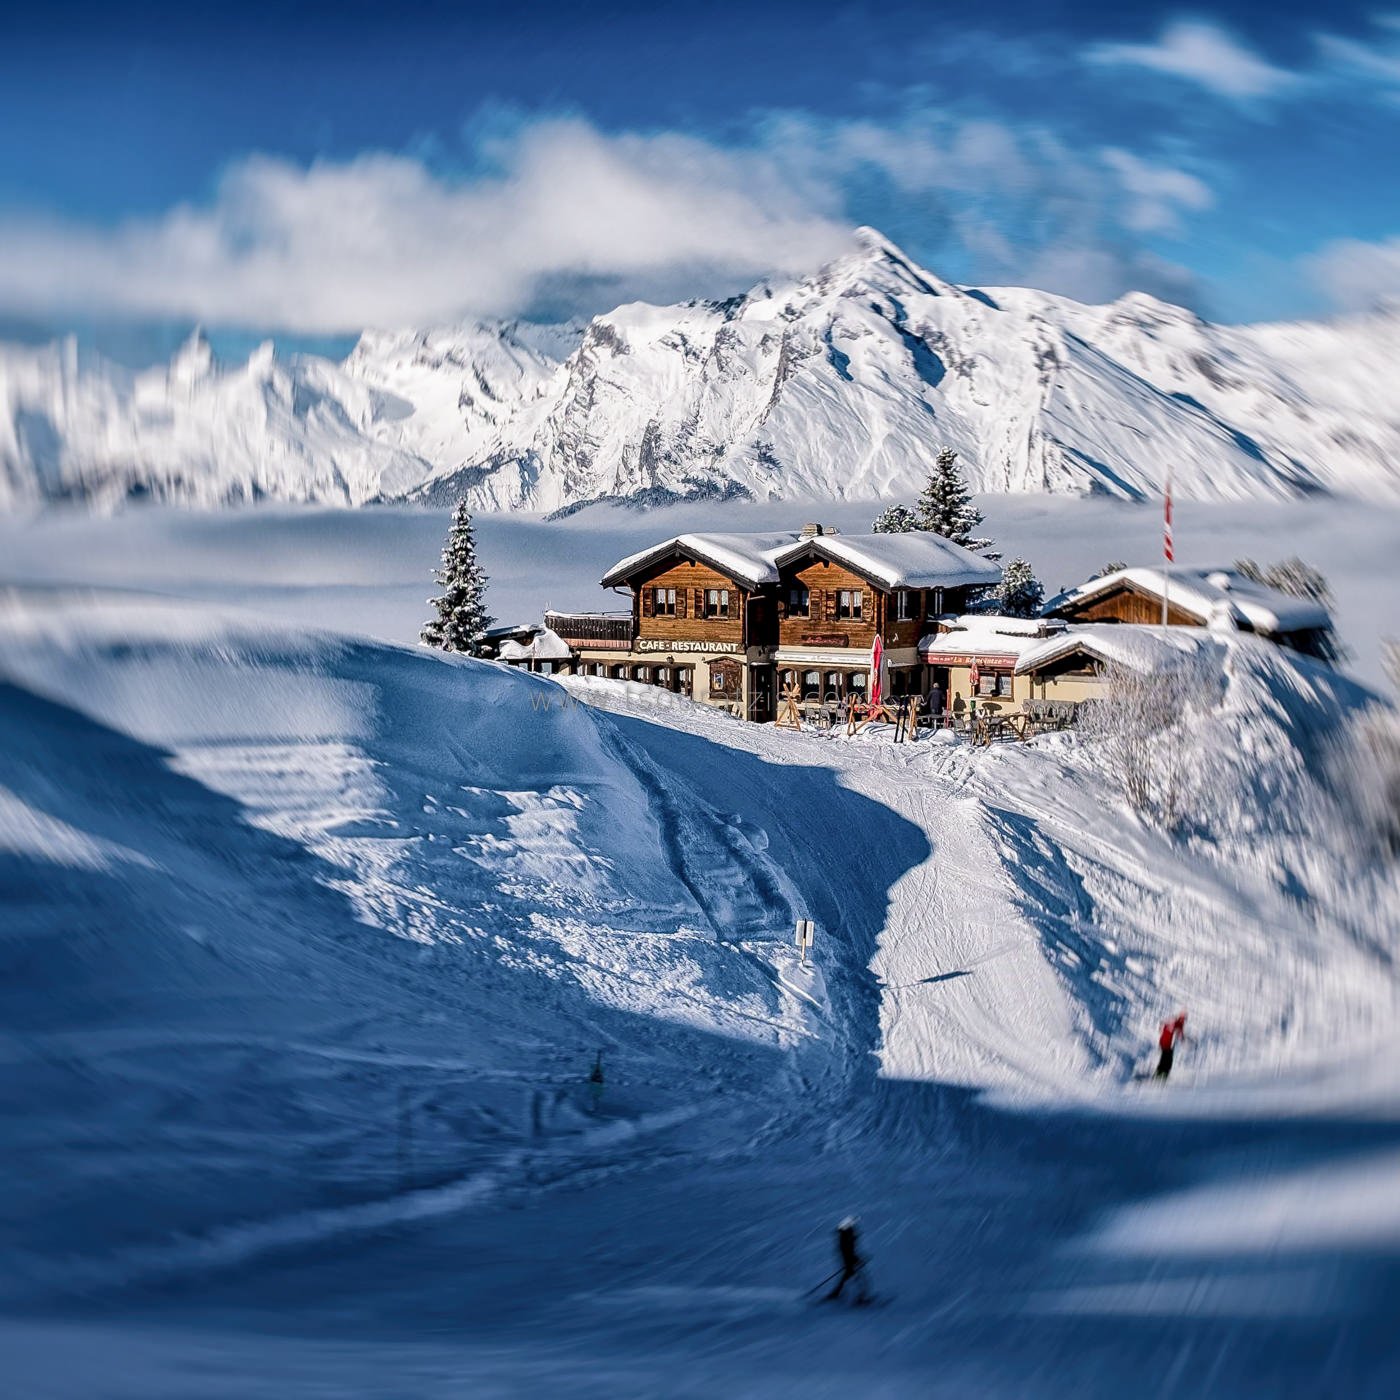 Skier in 4 Vallees ski resort Veysonnaz, Valais canton, Swiss Alps